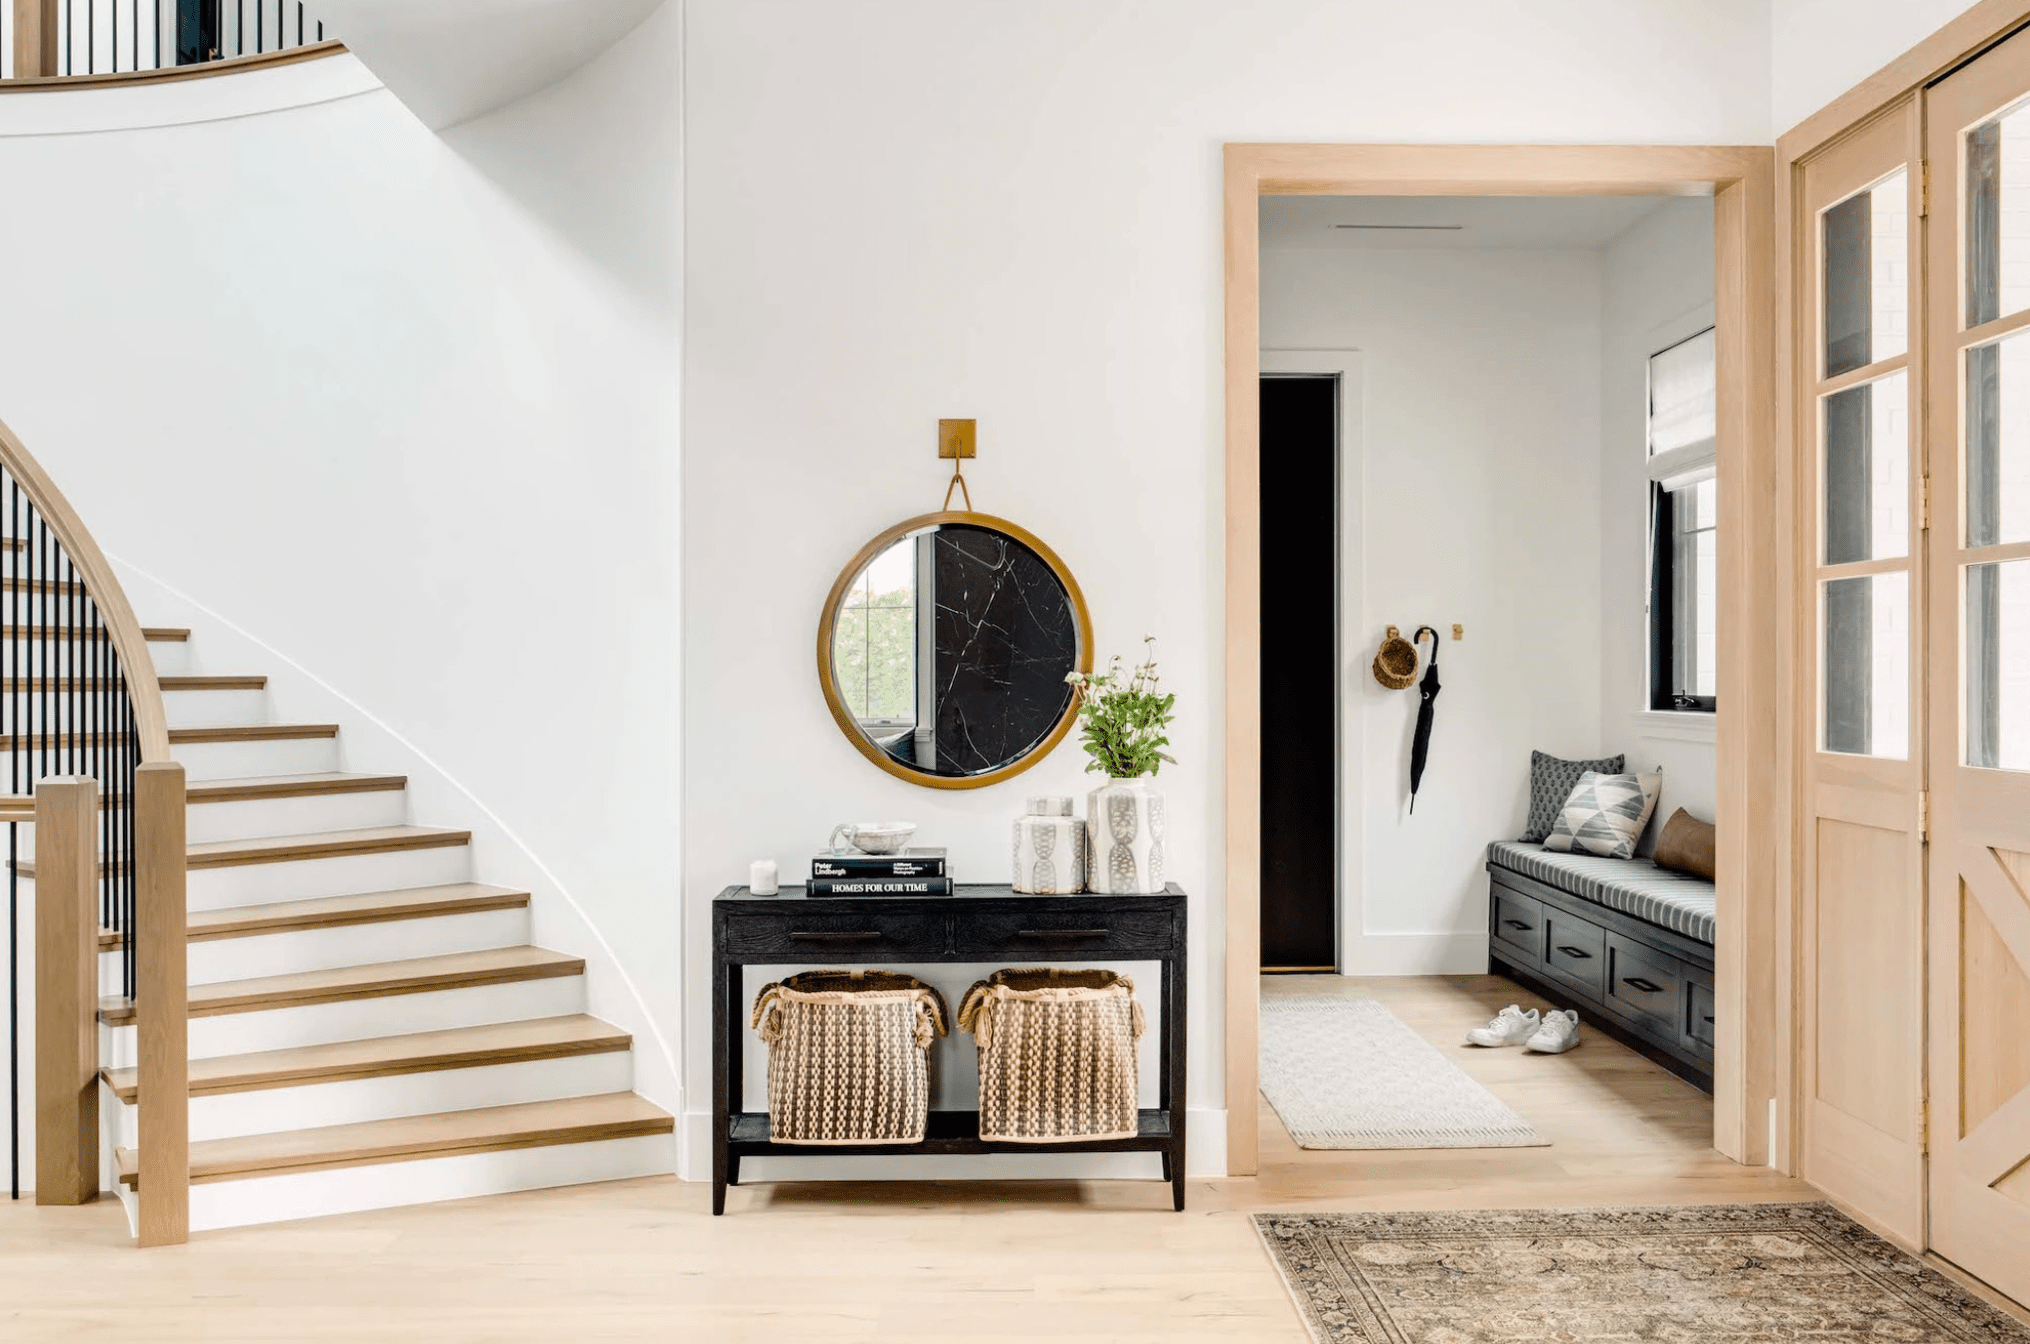 Should Entryway Rug Match Living Room Rug-Designer Guide